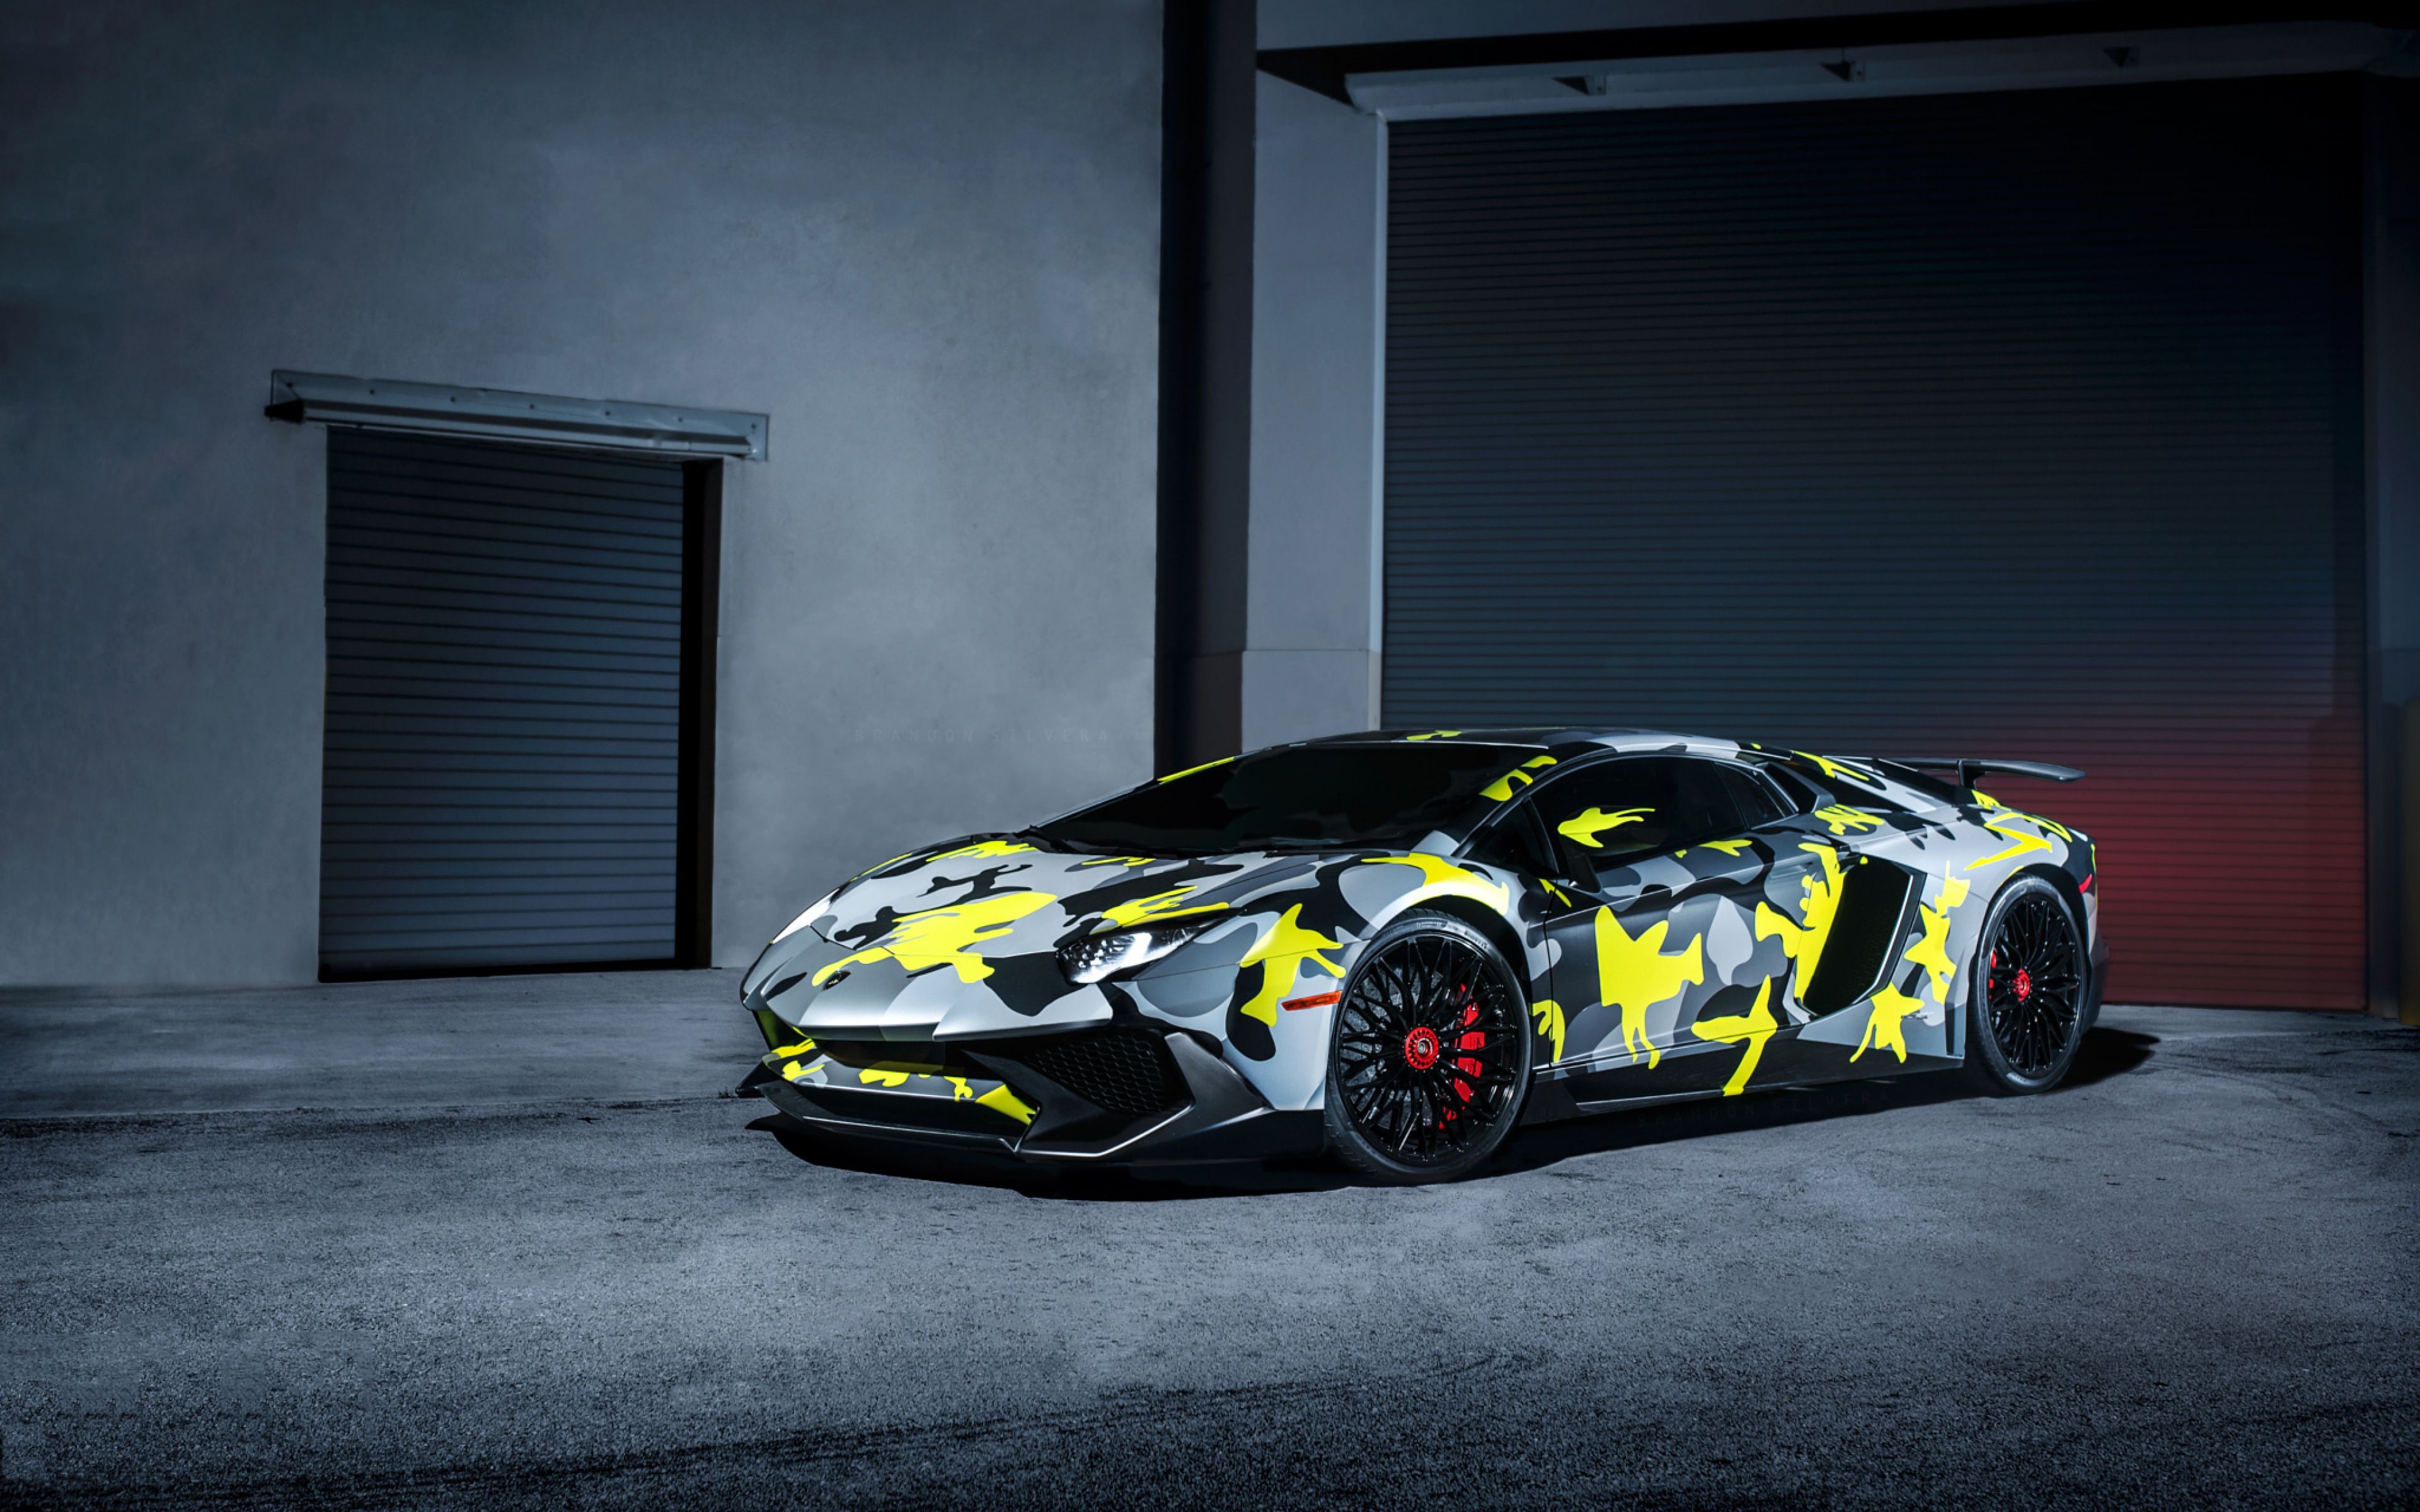 Free Download Lamborghini Wallpaper Hd Vehicles Wallpapers